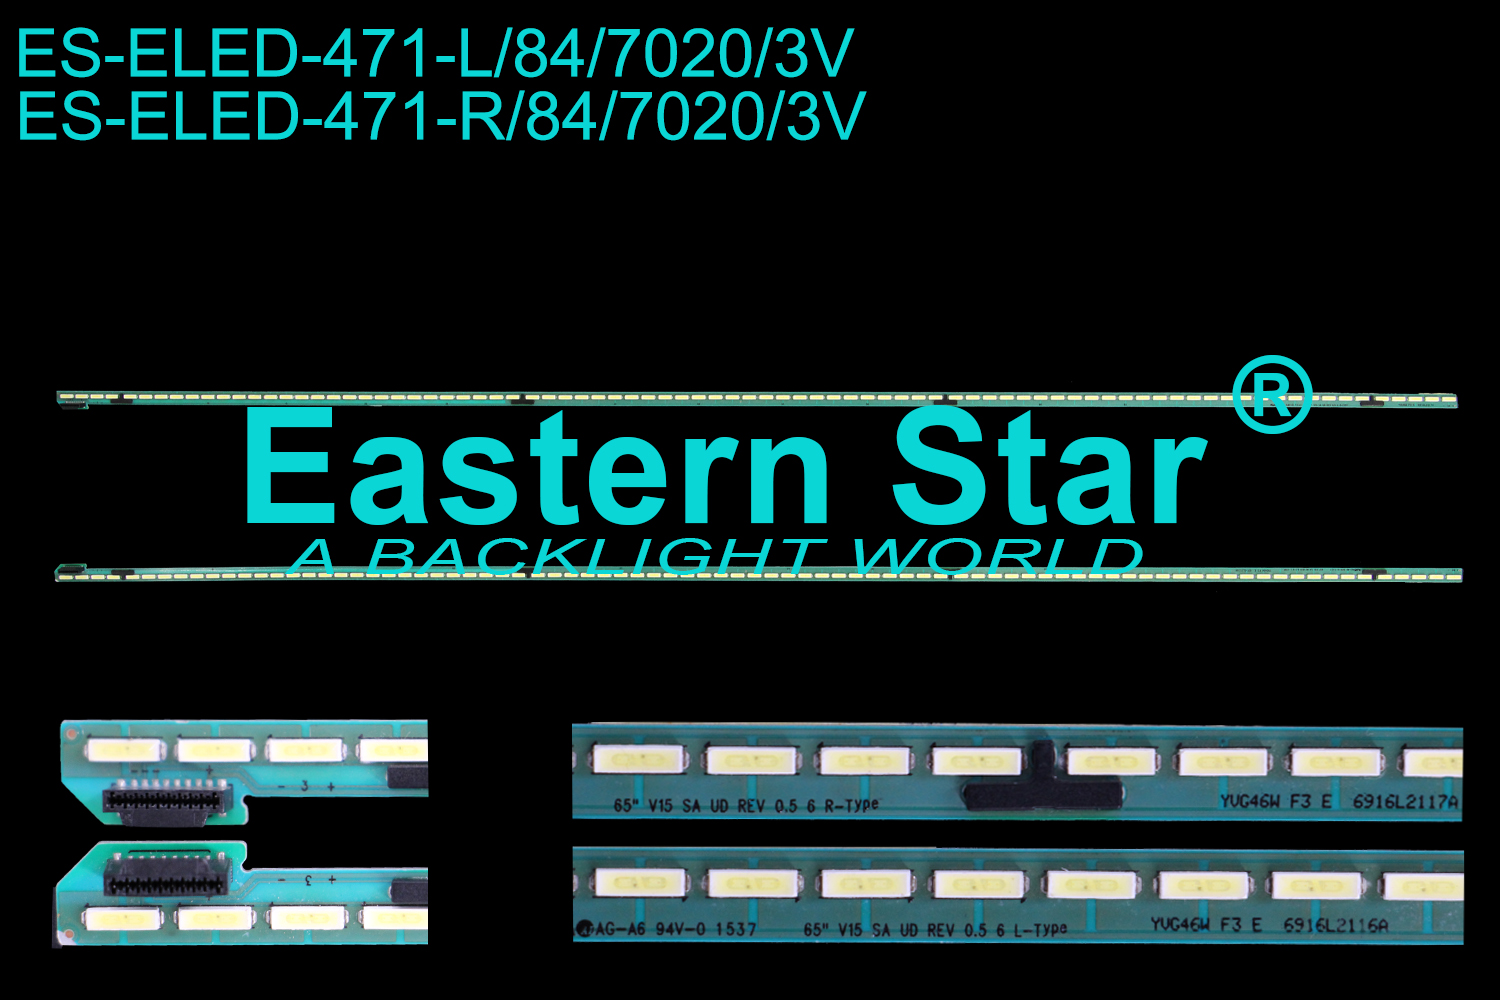 ES-ELED-471 ELED/EDGE TV backlight use for 65'' LG 65UF8500-UB 6916L2116A，6916L2117A  L:65" V15 SA UD REV 0.5 6 L-Type   R: 65" V15 SA UD REV 0.5 6 R-Type LED STRIPS(2）